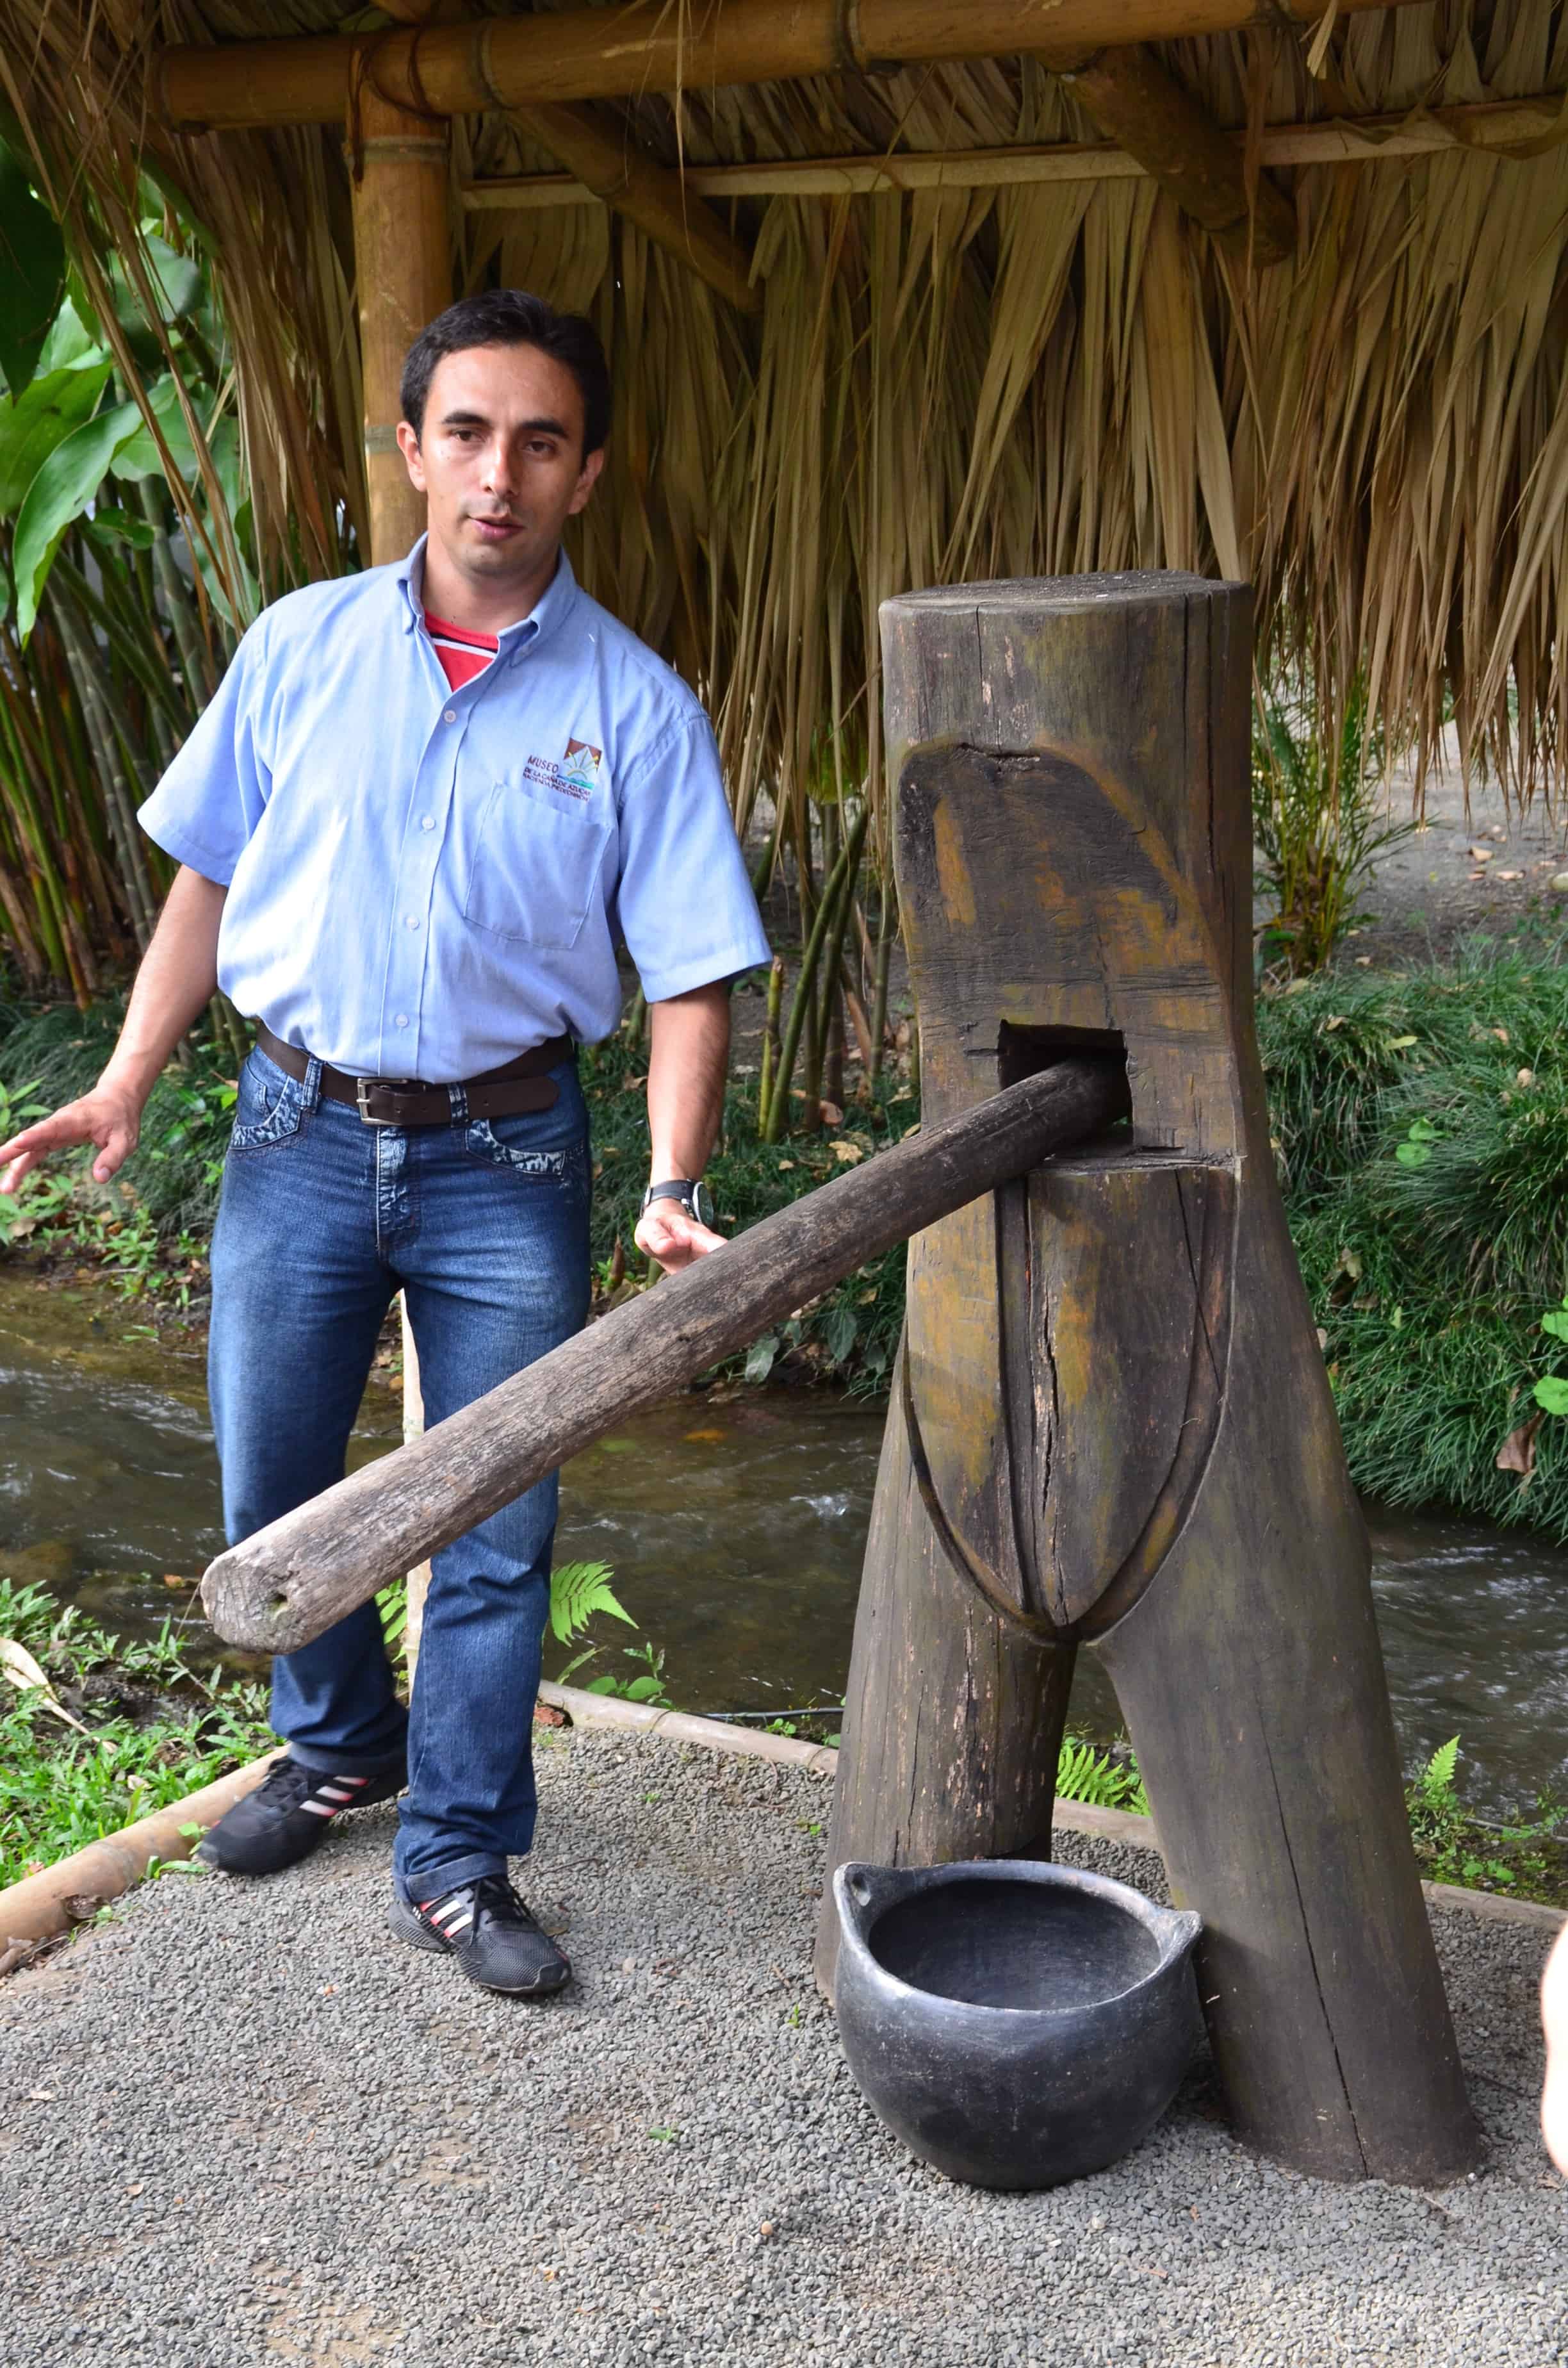 Trapiche La Vieja at the Sugarcane Museum in Valle del Cauca, Colombia